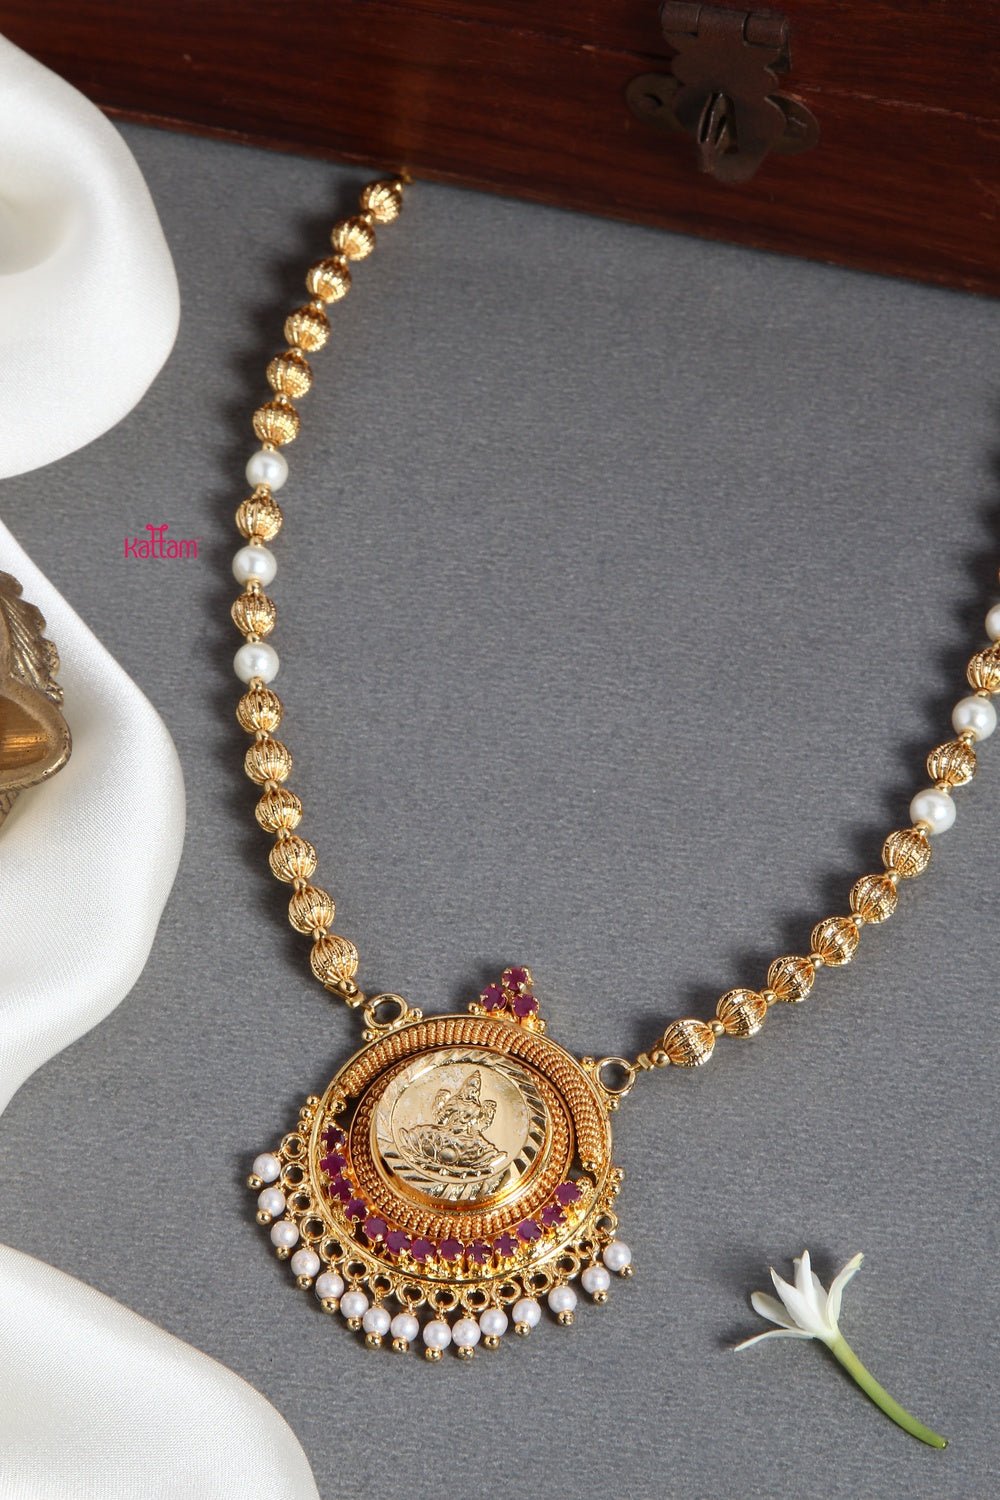 Goldtone Kerala Style Chain (No earring) - N1334